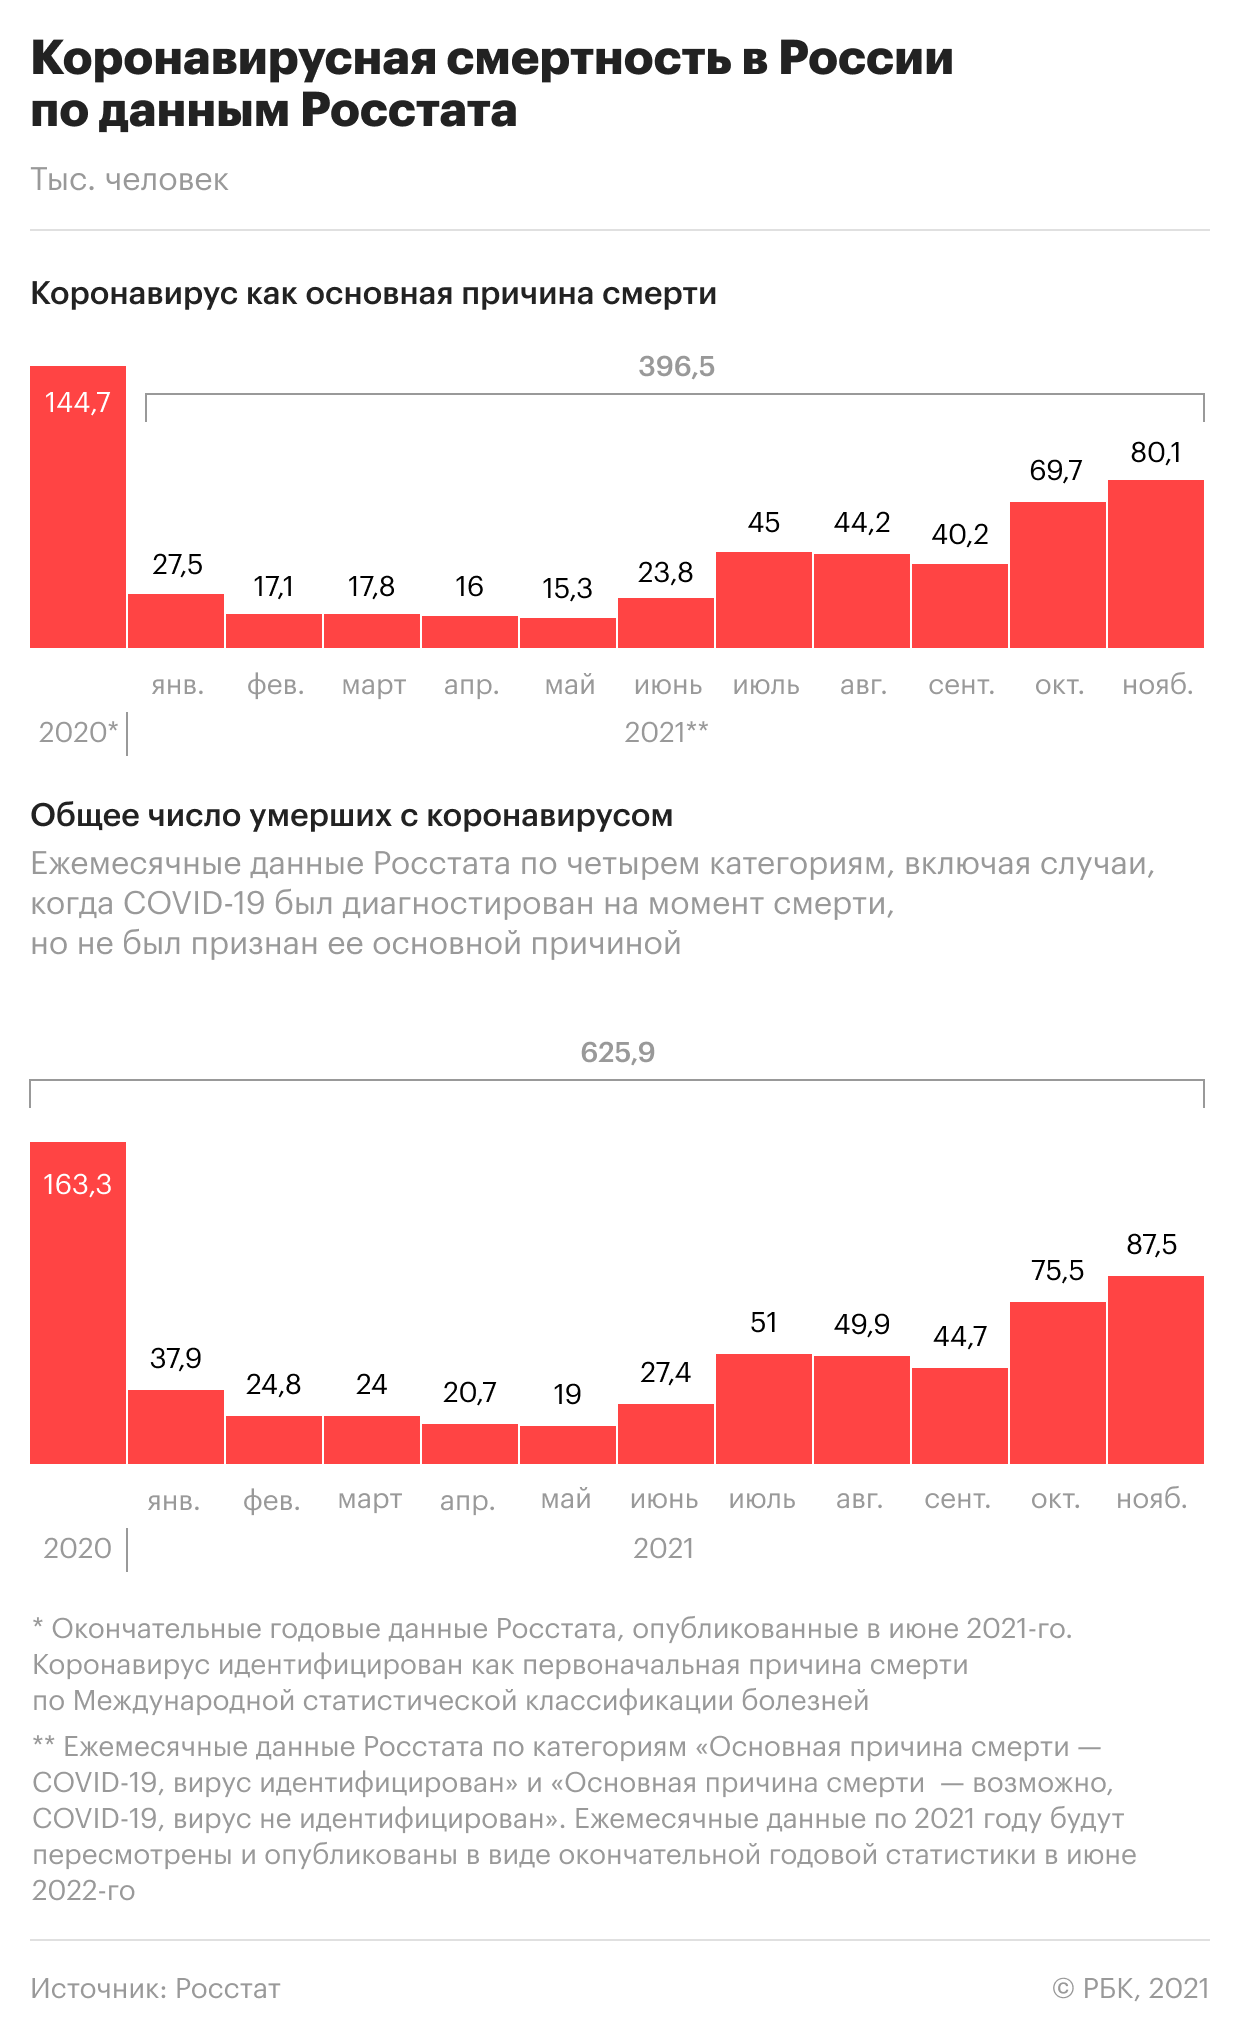 Тесты на «омикрон» в России. Актуальное о коронавирусе на 12 января